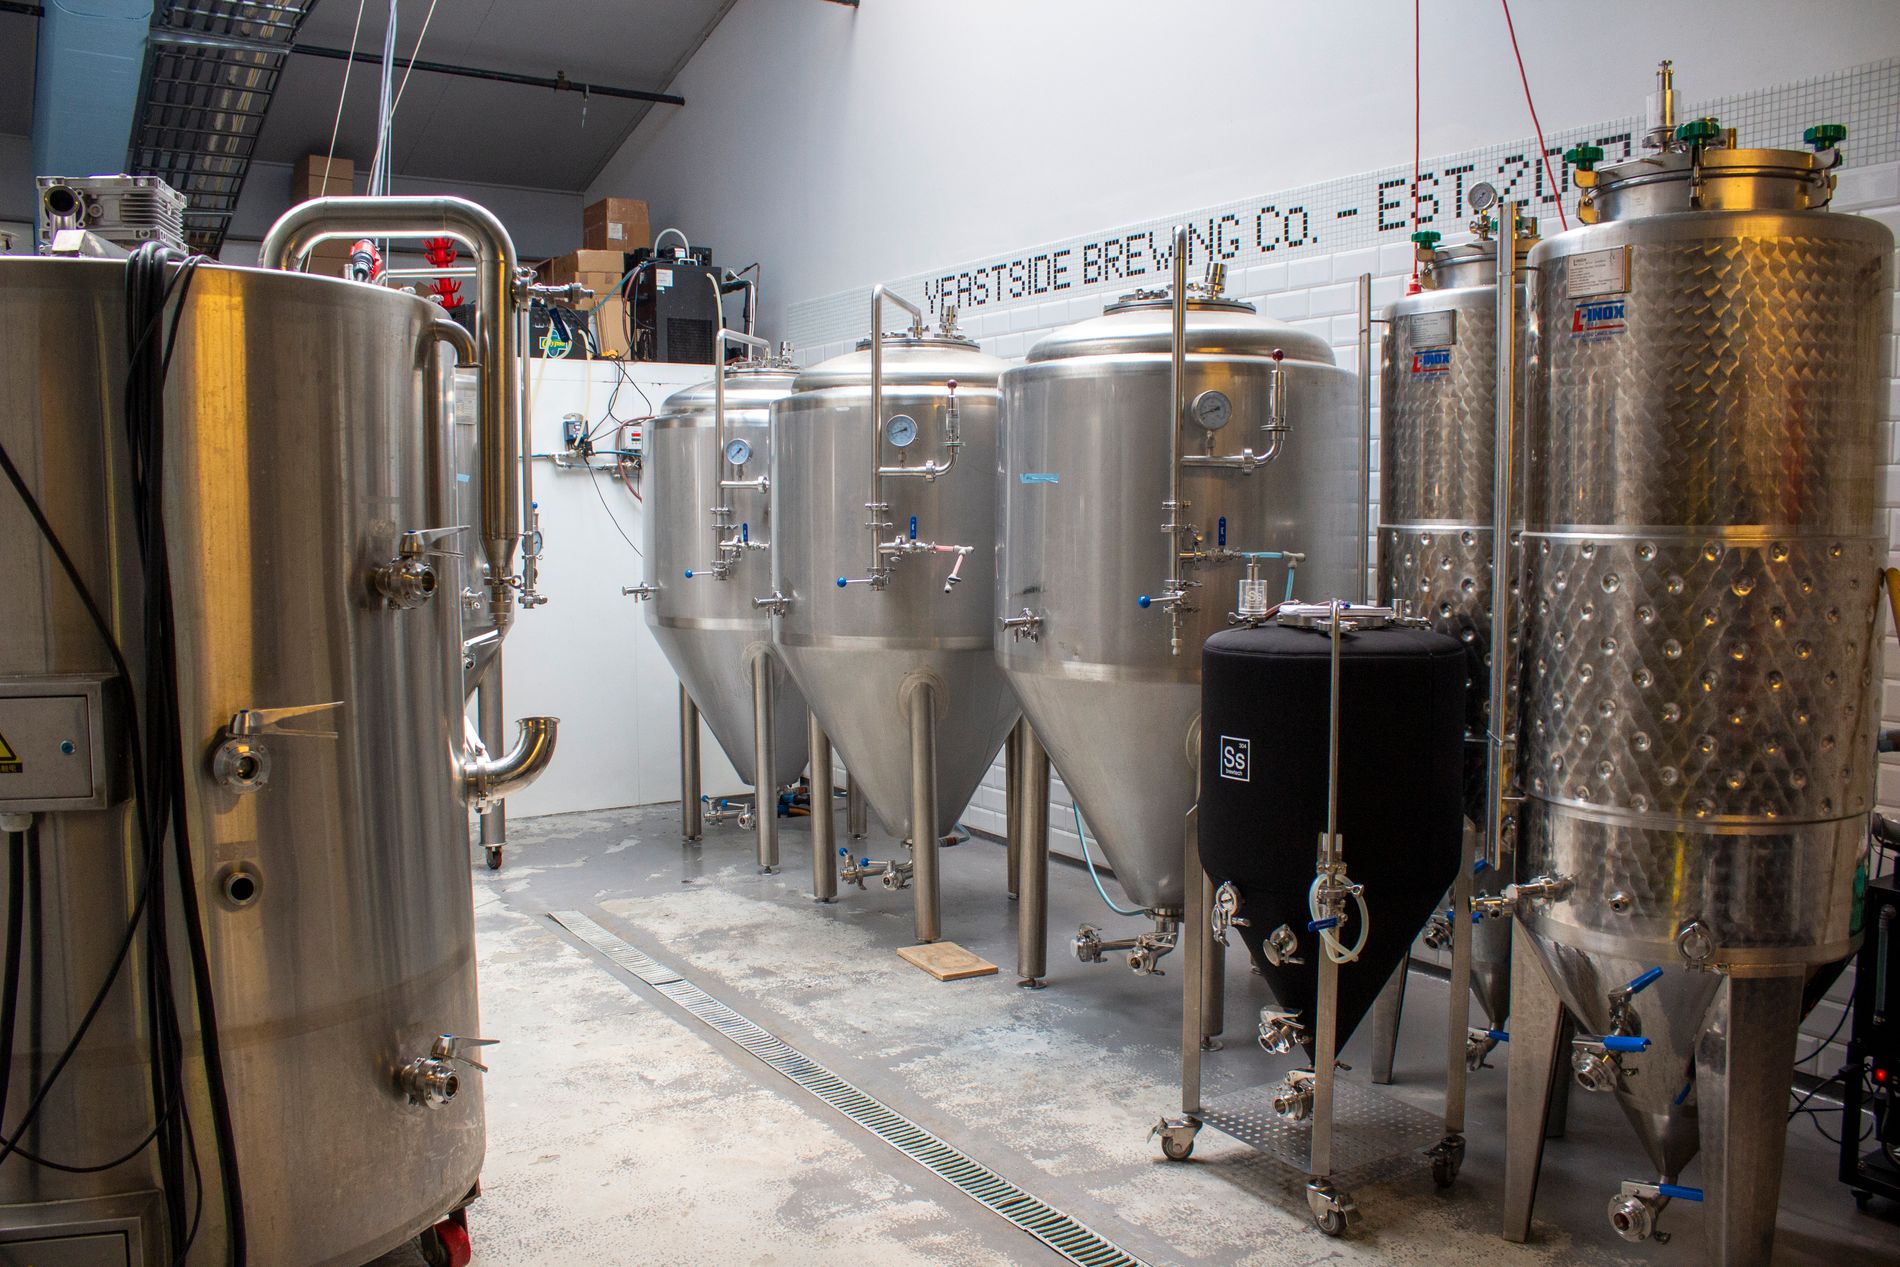 Nylig investerte bryggeriet i tre nye tanker på 500 liter. For å kunne bli lønnsomme, er investeringen nødvendig, forteller ølgründeren. 